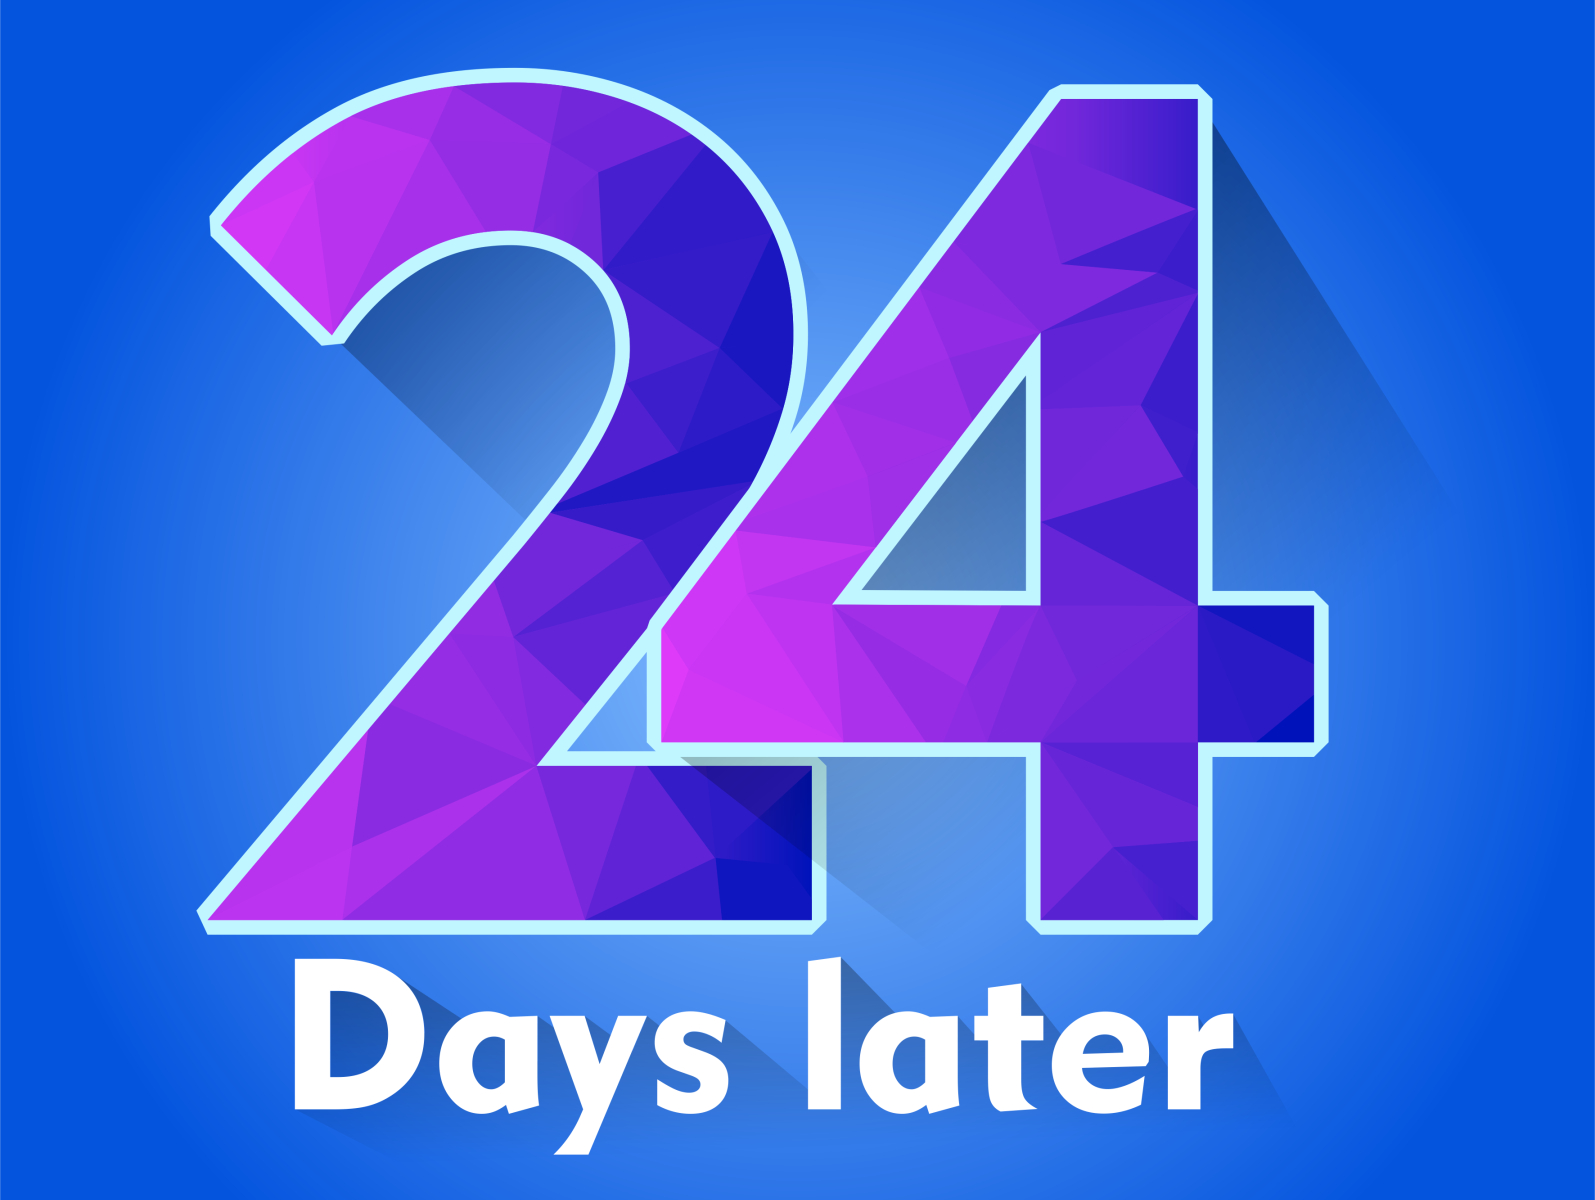 24 countdown by dimas zuda on Dribbble